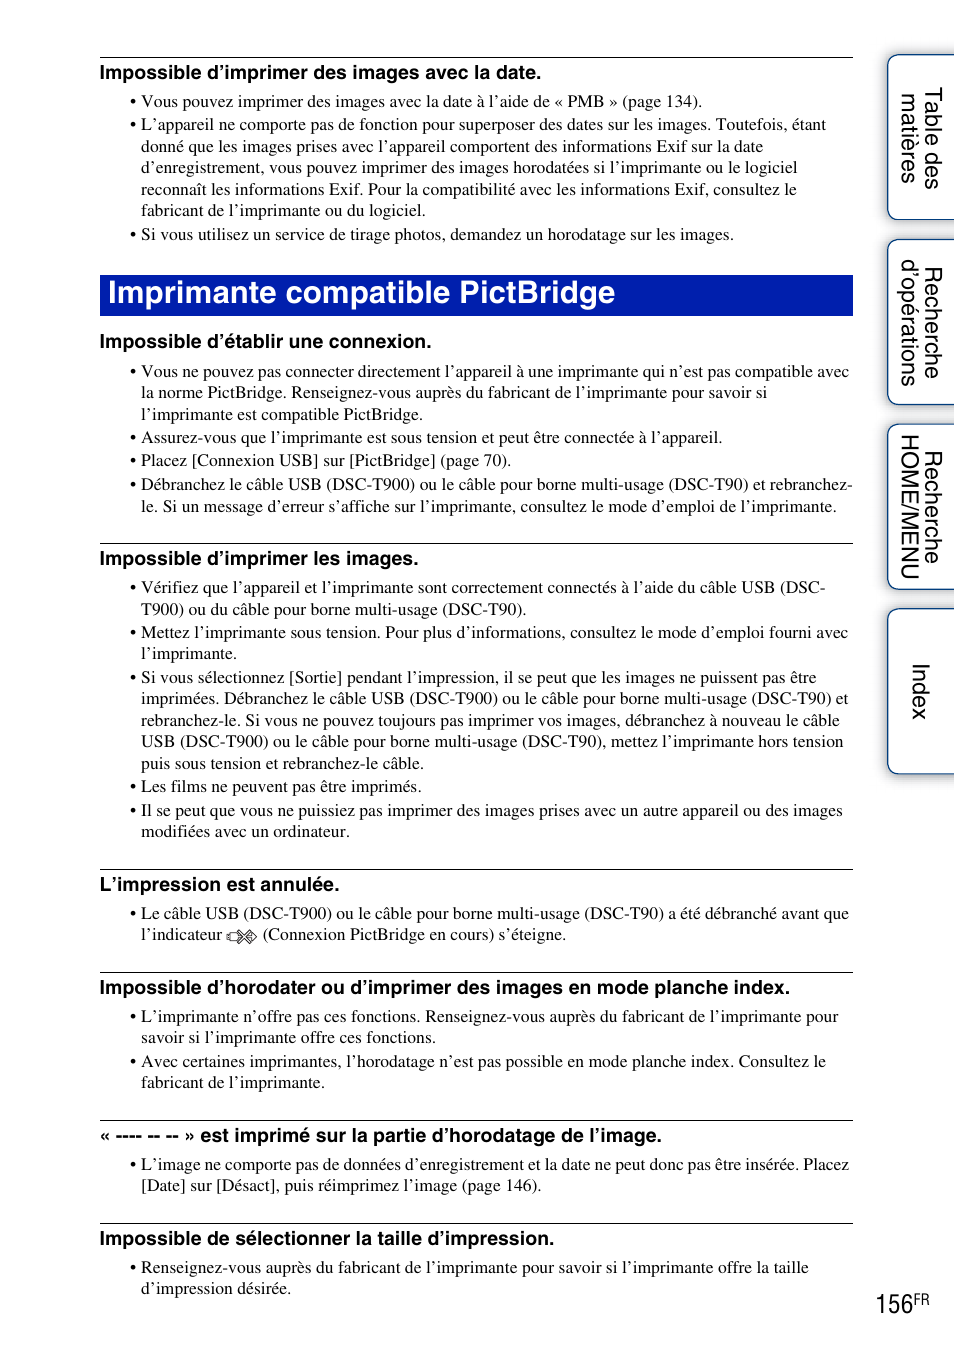 Imprimante compatible pictbridge | Sony DSC-T900 Manuel d'utilisation | Page 156 / 171